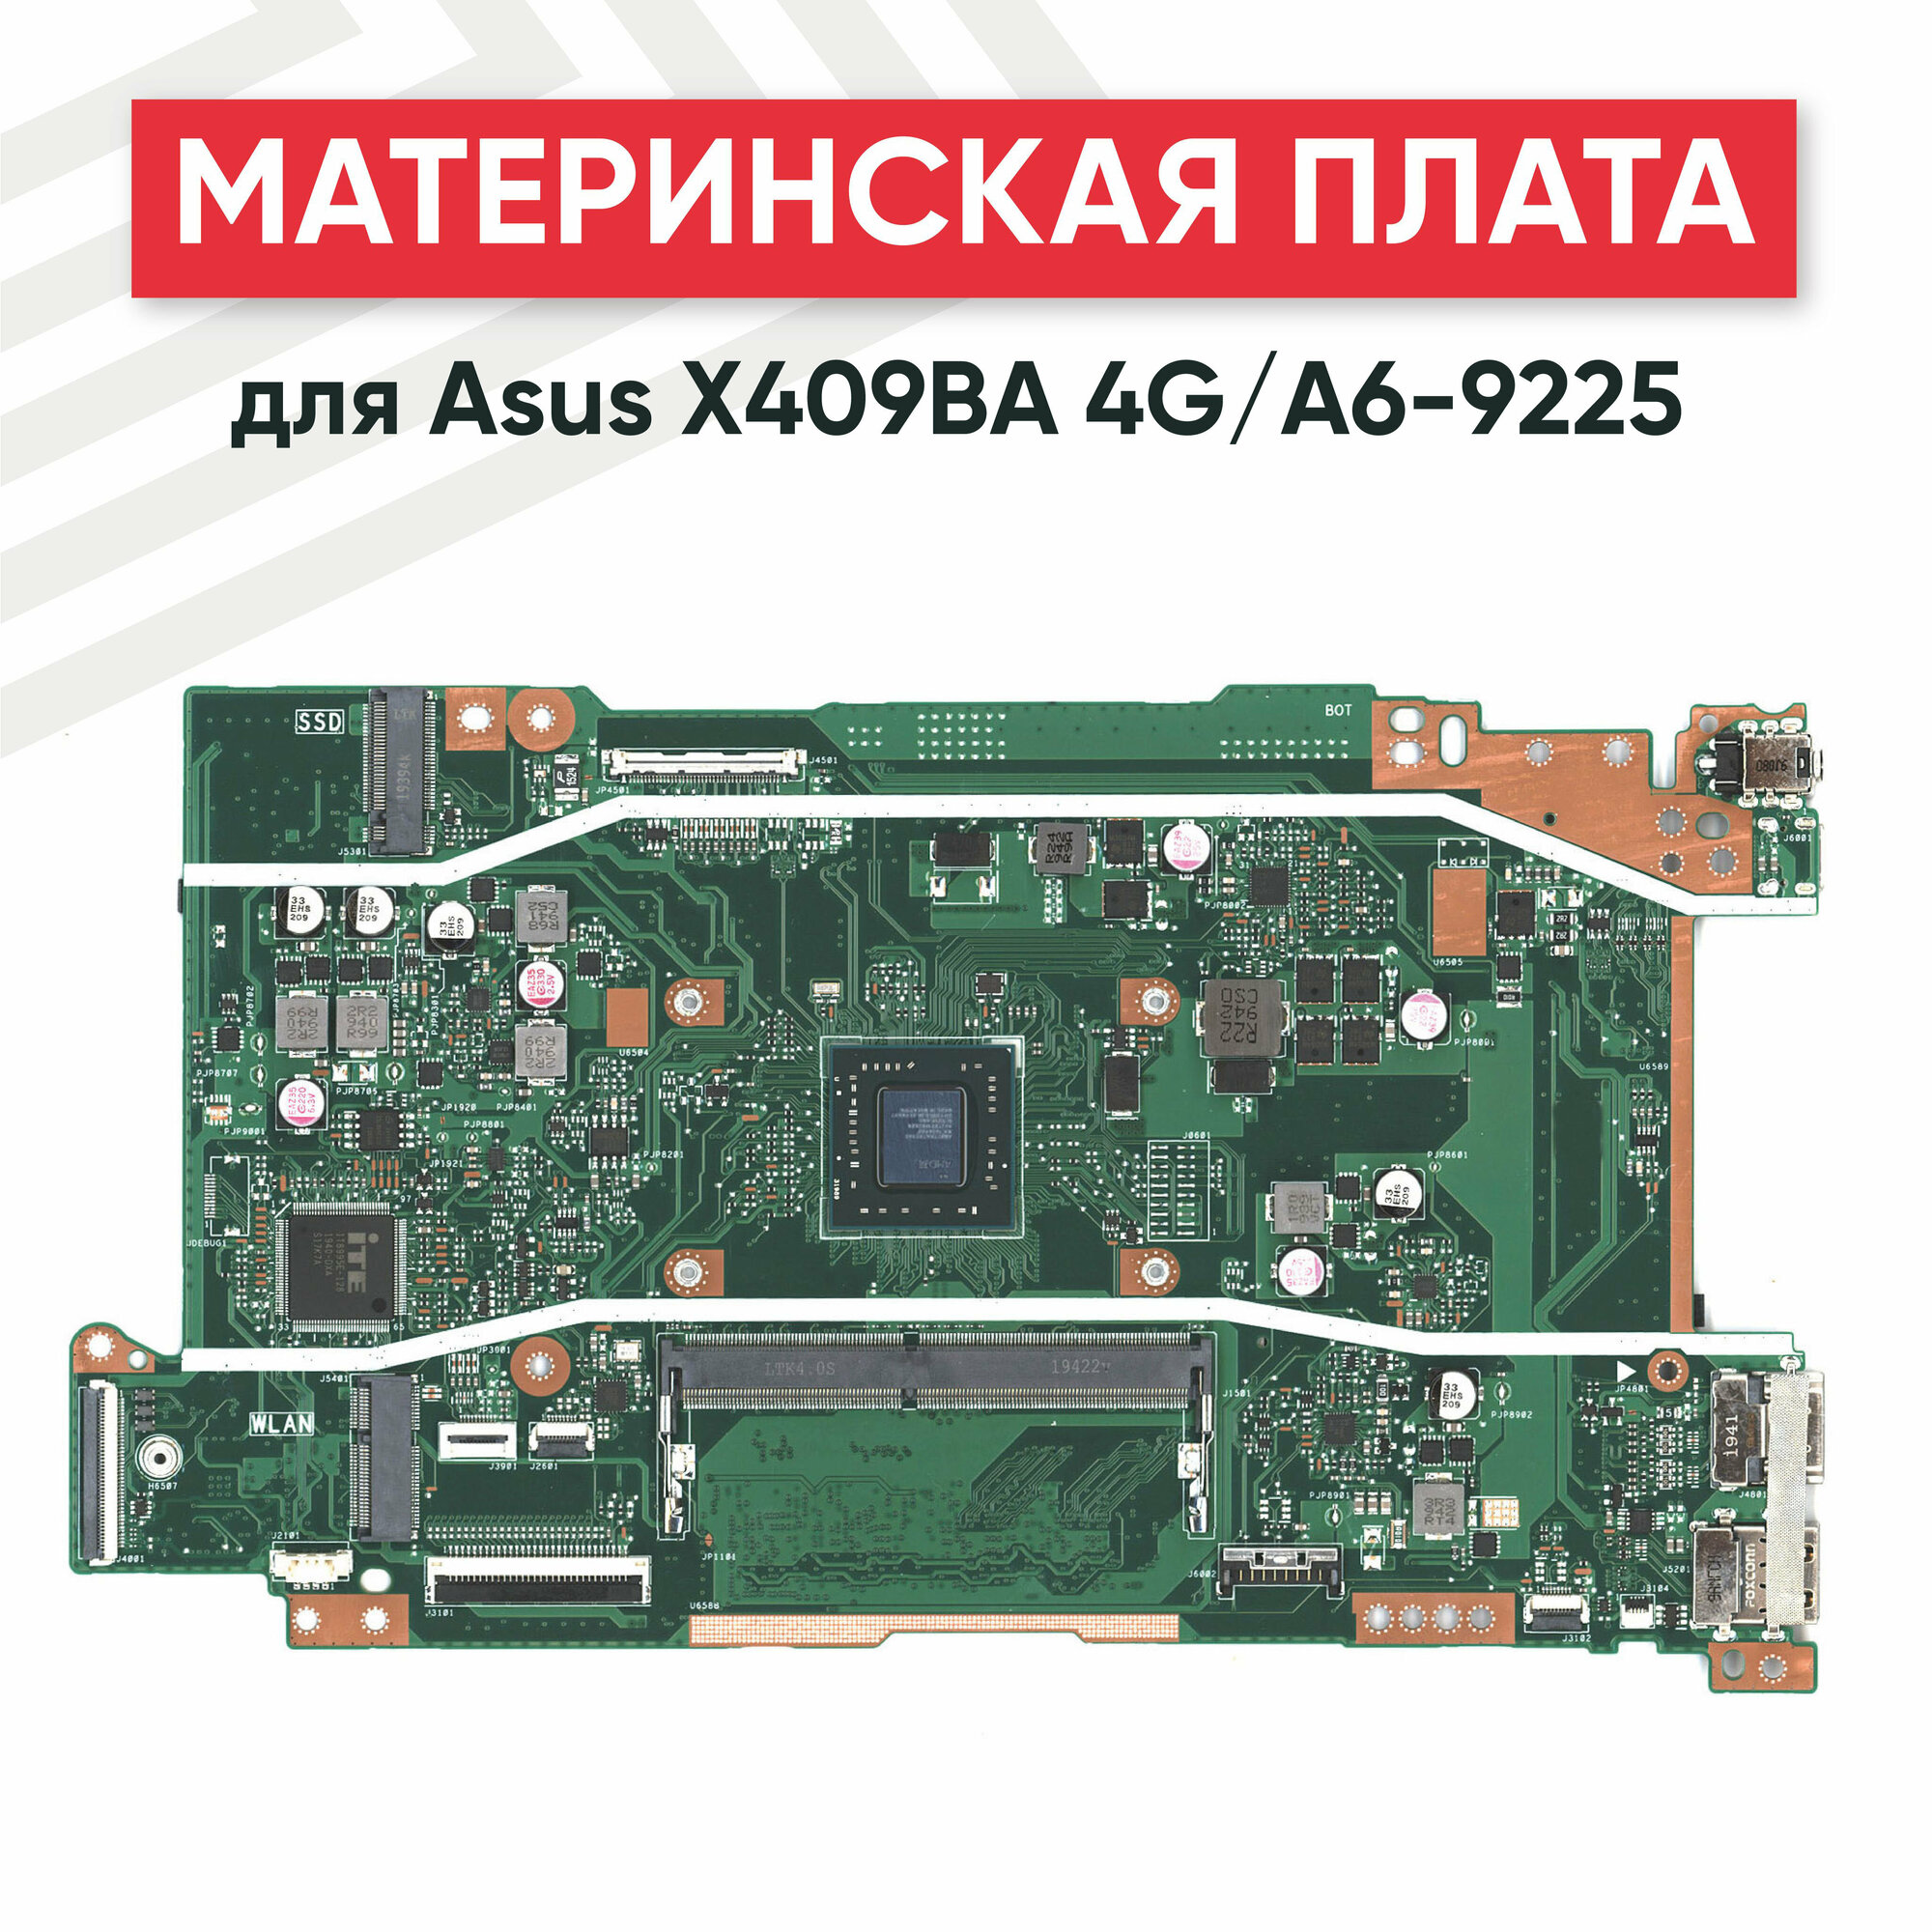 Материнская плата для Asus X409BA 4G/A6-9225